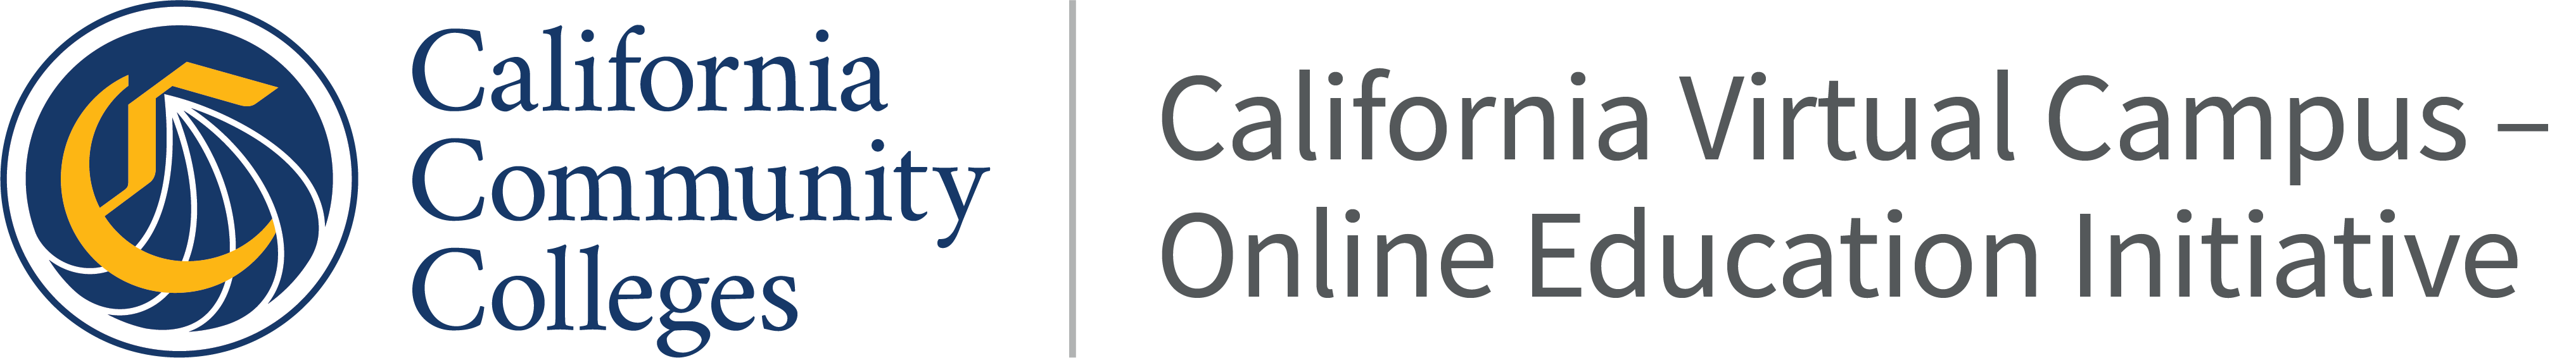 California Community Colleges - California Virtual Campus - Online Education Initiative